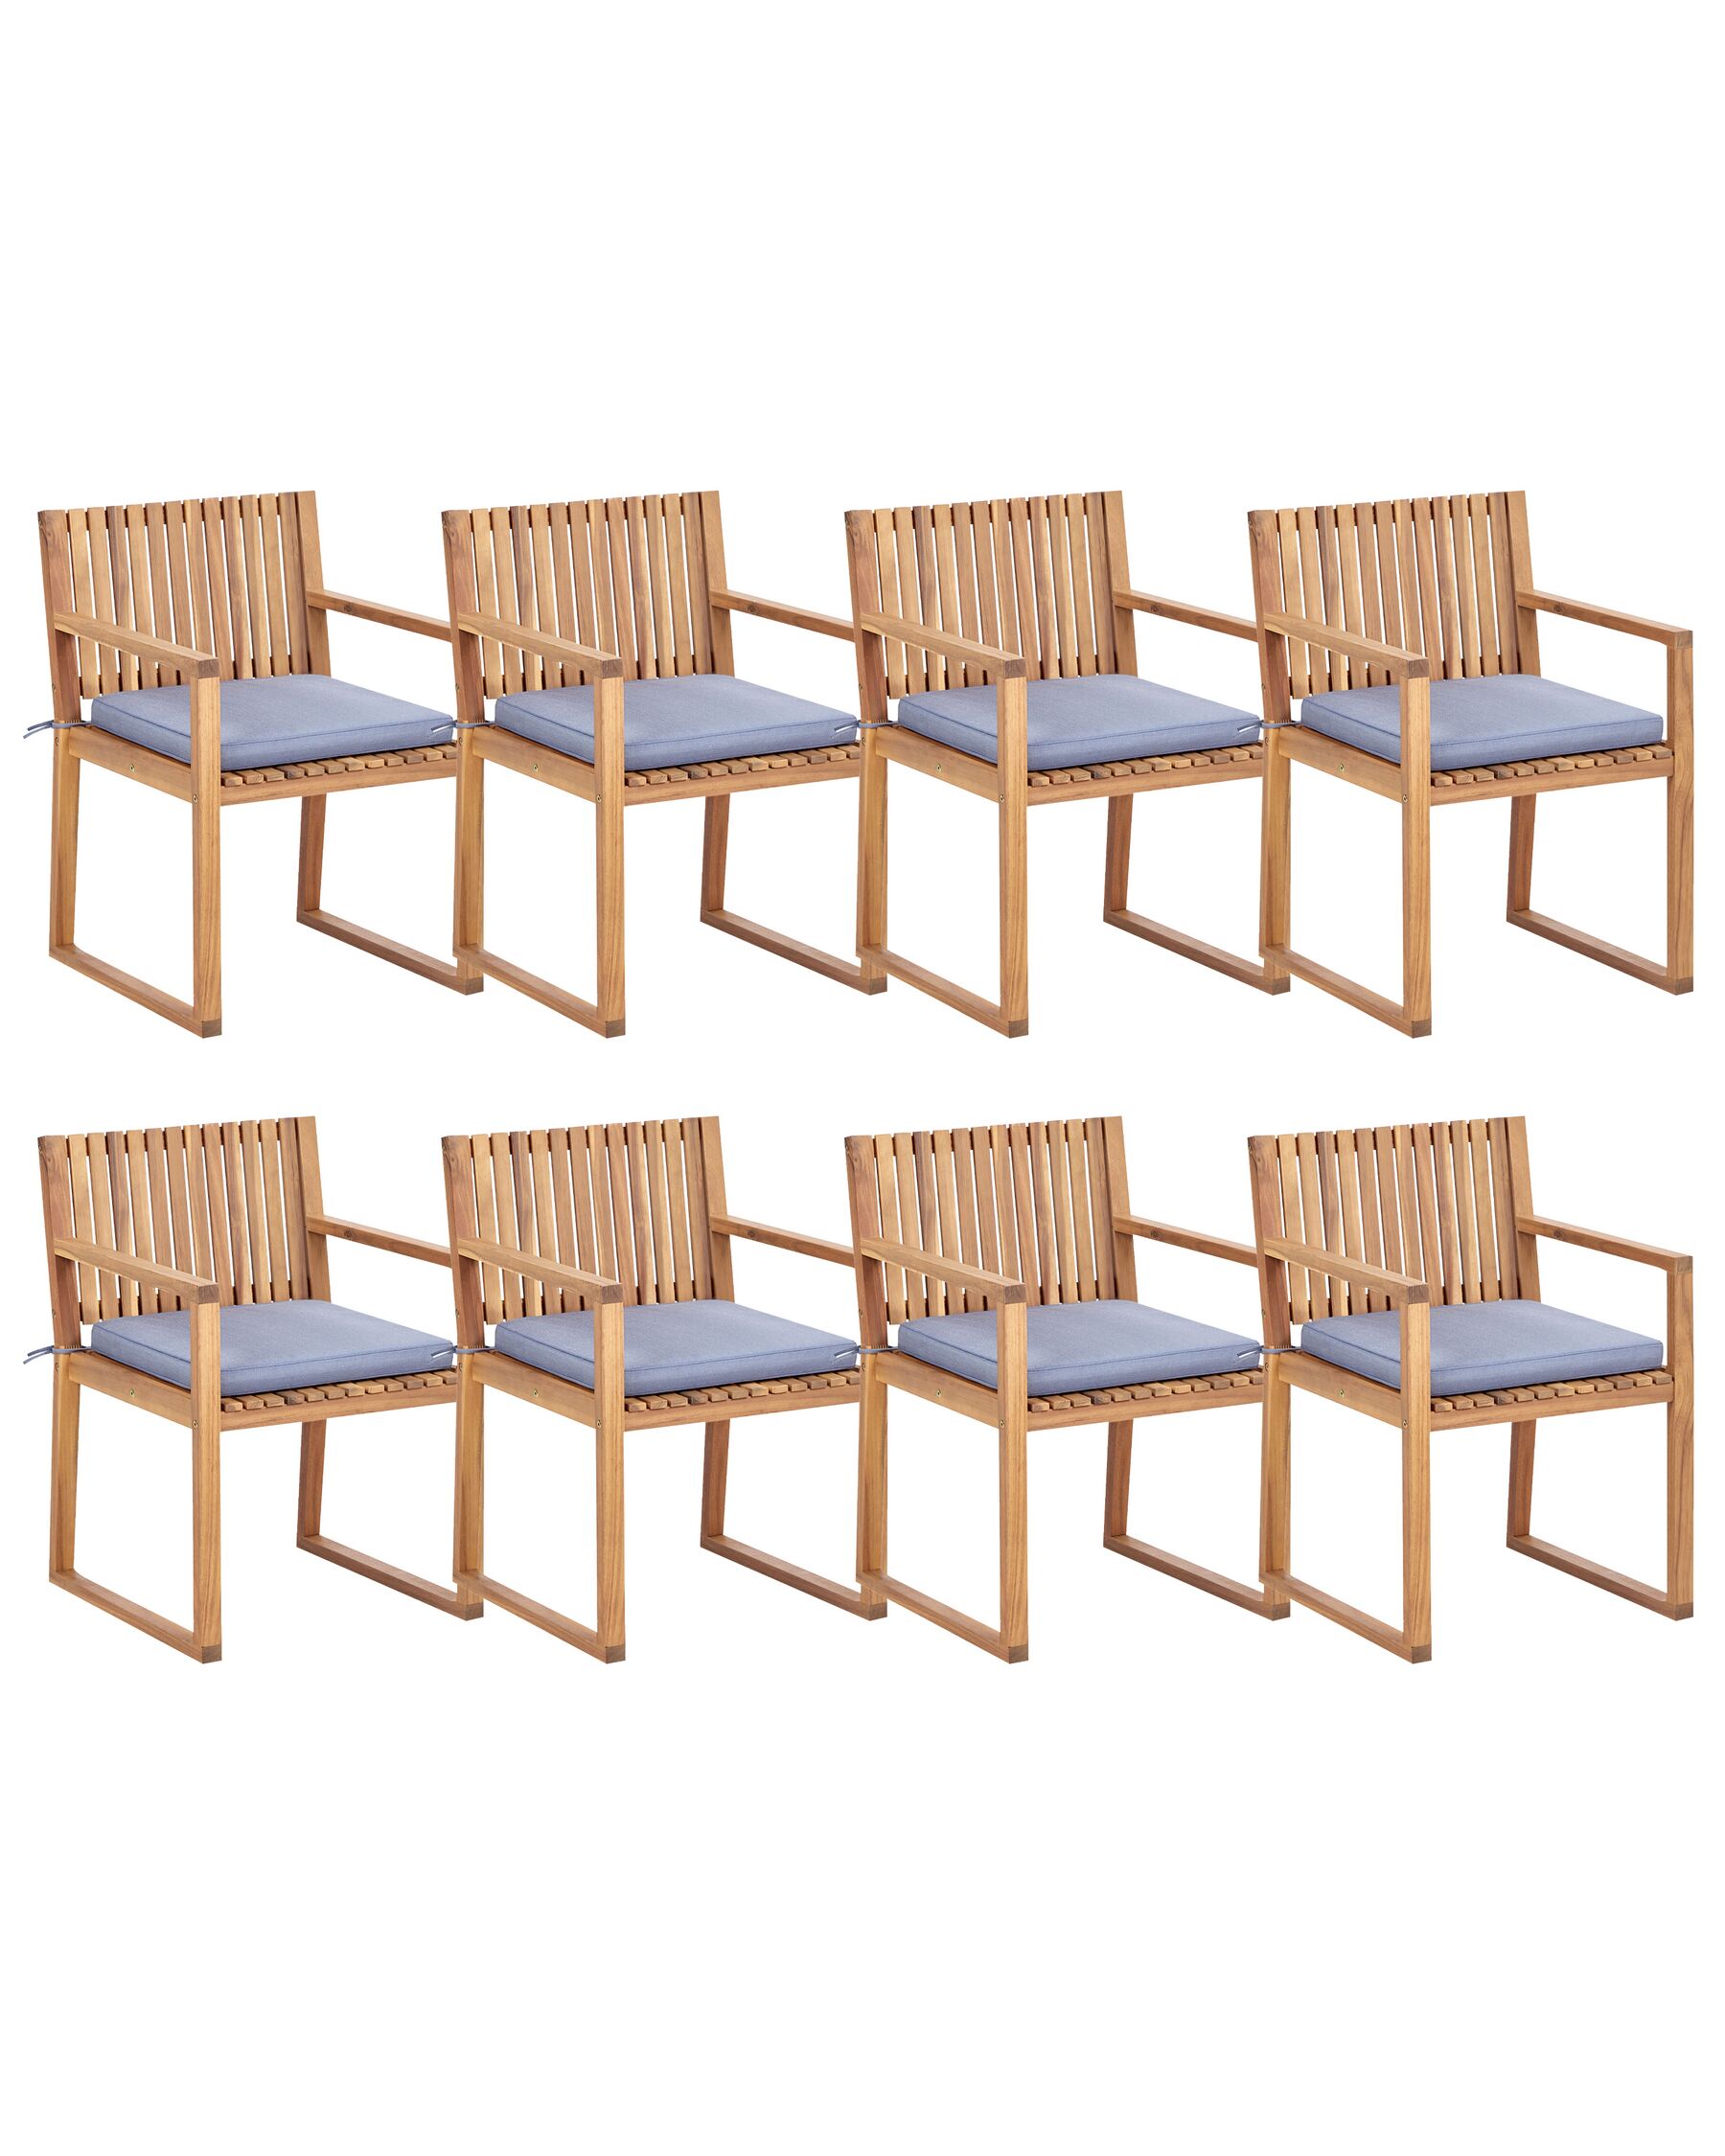 Sada 8 záhradných stoličiek svetlé certifikované akáciové drevo/modré podsedáky SASSARI II_923917